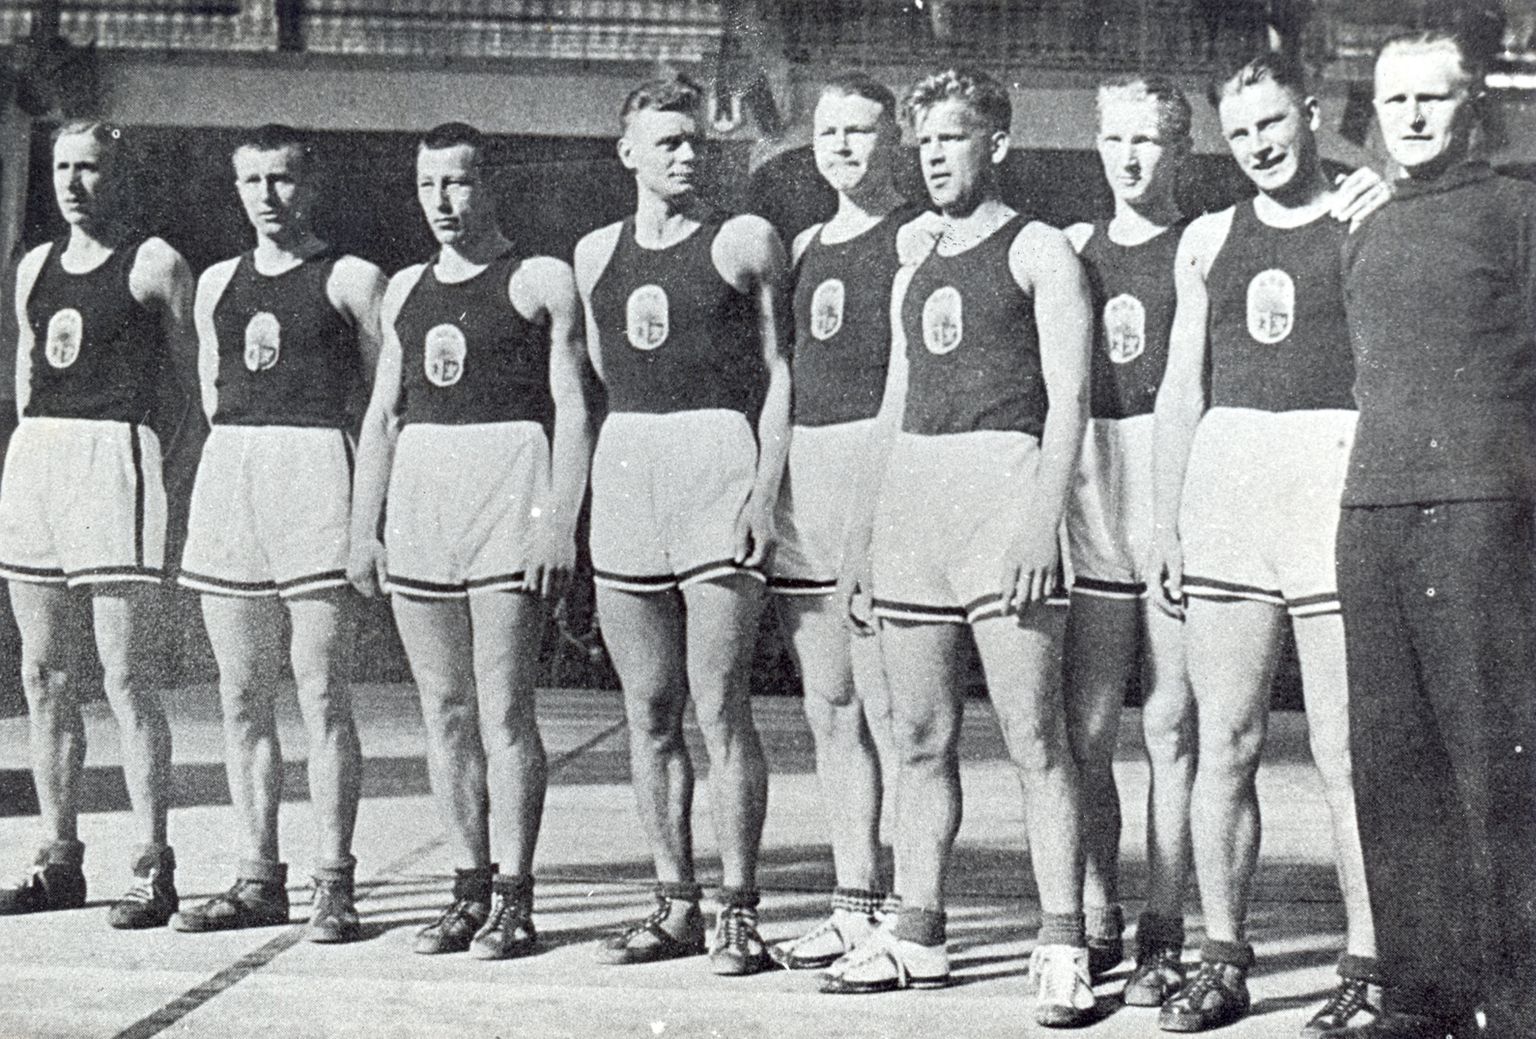 No kreisās: Mārtiņš Grundmanis, Džems Raudziņš, Aleksejs Anufrijevs, Rūdolfs Jurciņš, Visvaldis Melderis, Jānis Lidmanis, Herberts Gubiņš, Eduards Andersons, Valdemārs Baumanis.